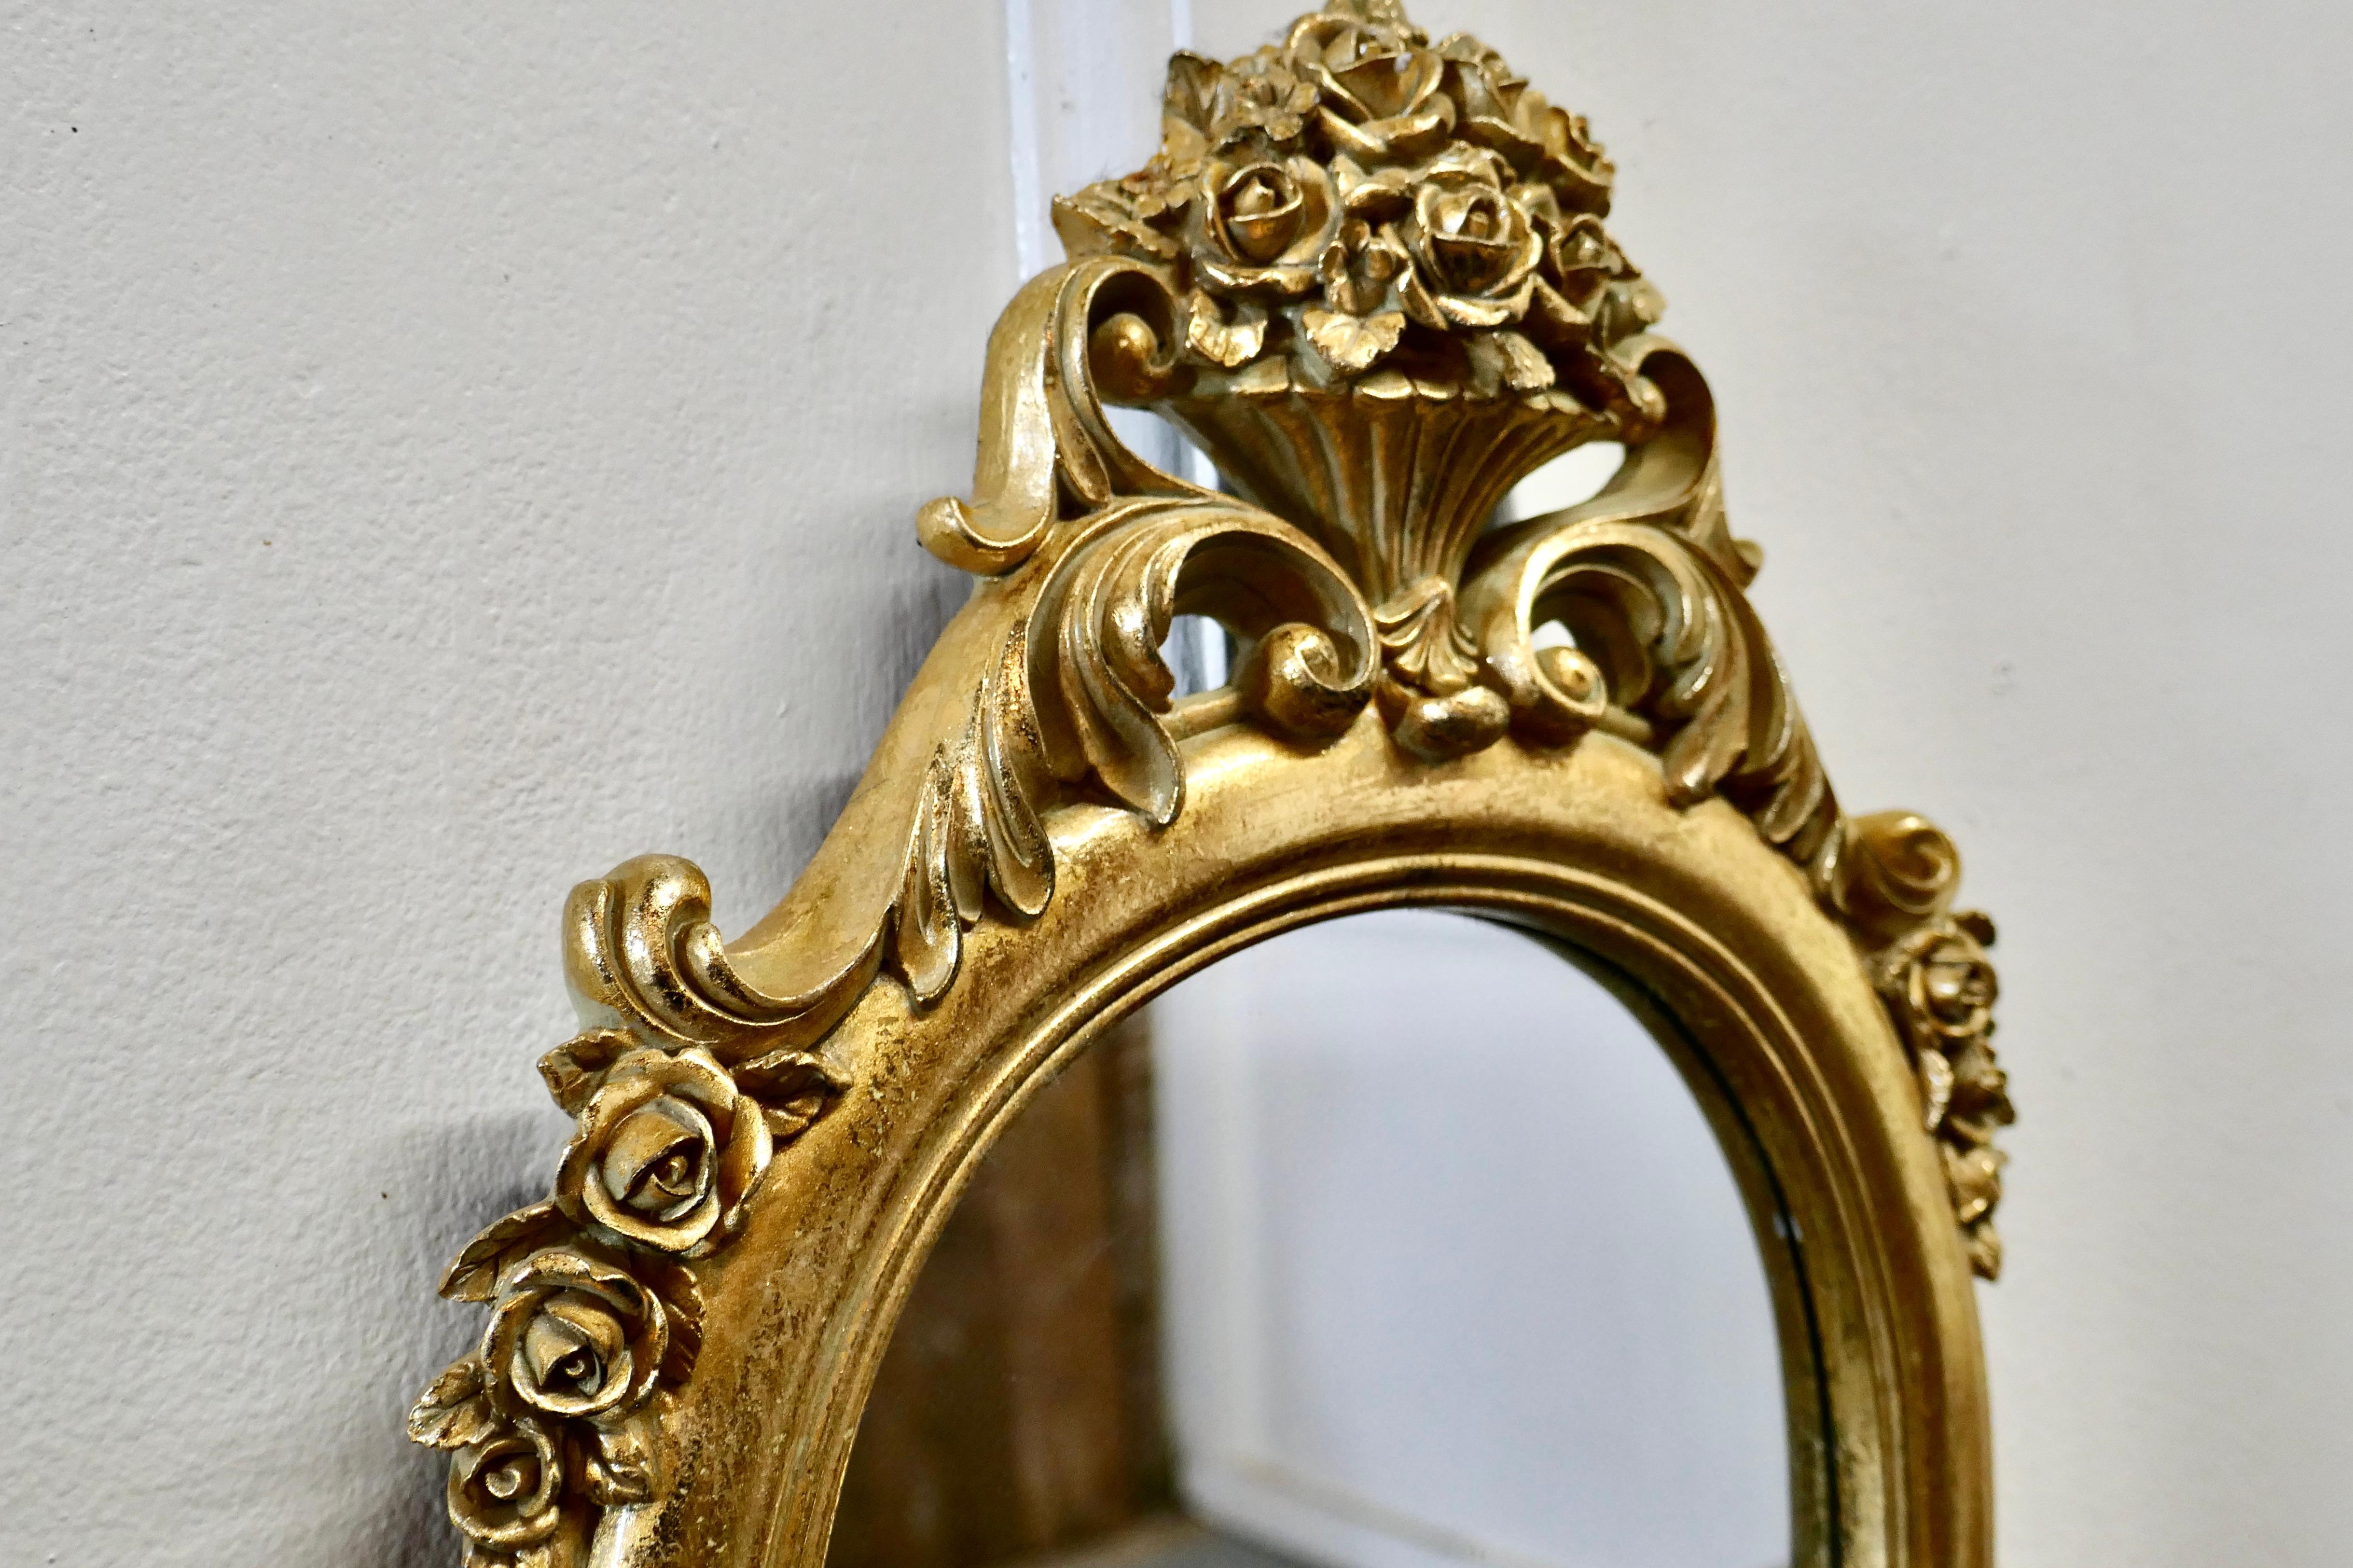 small decorative mirrors